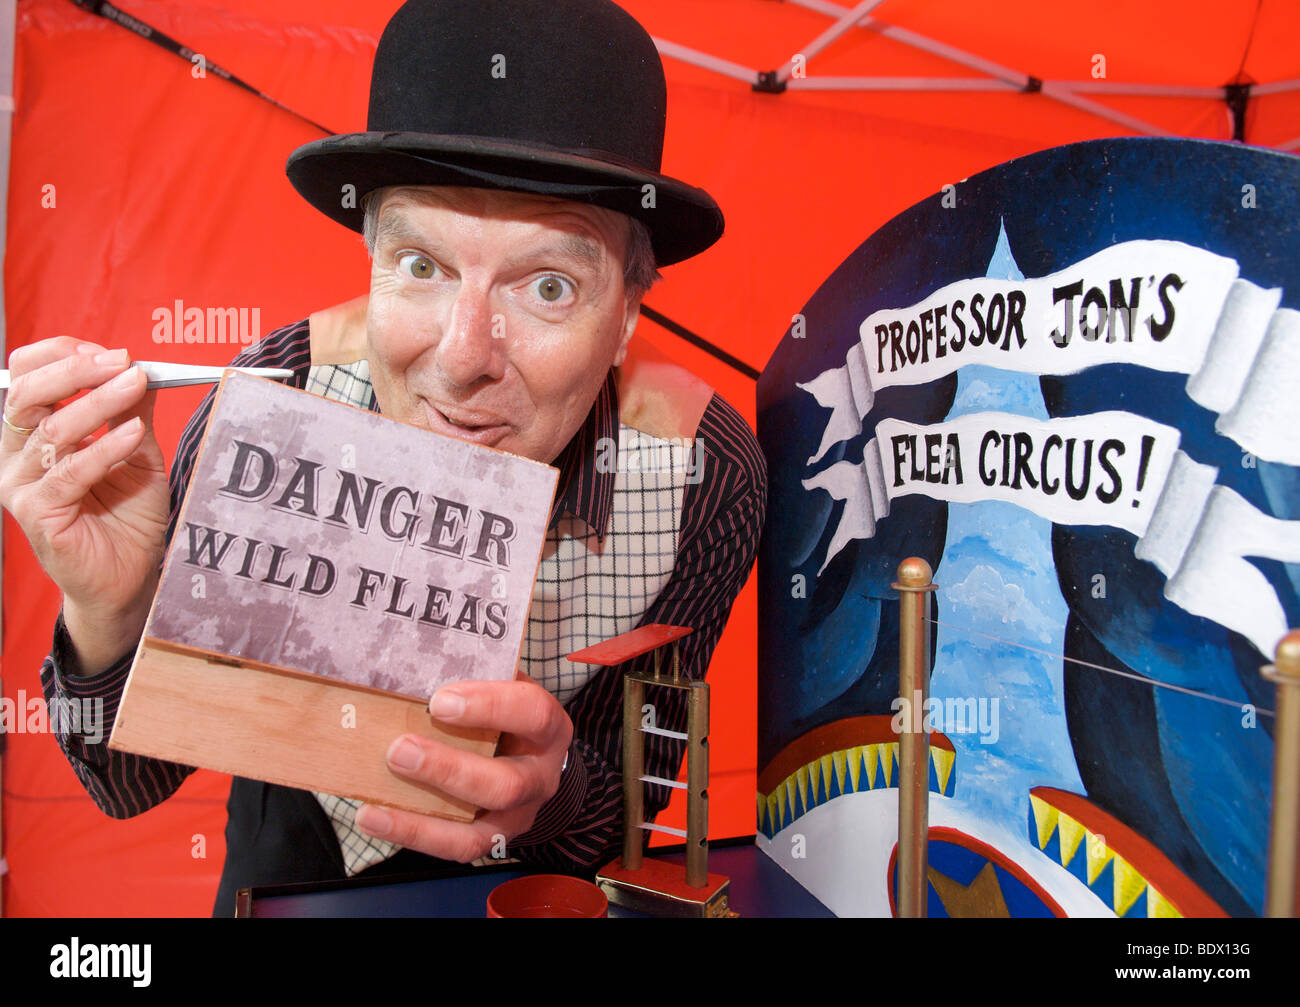 Le professeur Jon's flea circus Banque D'Images